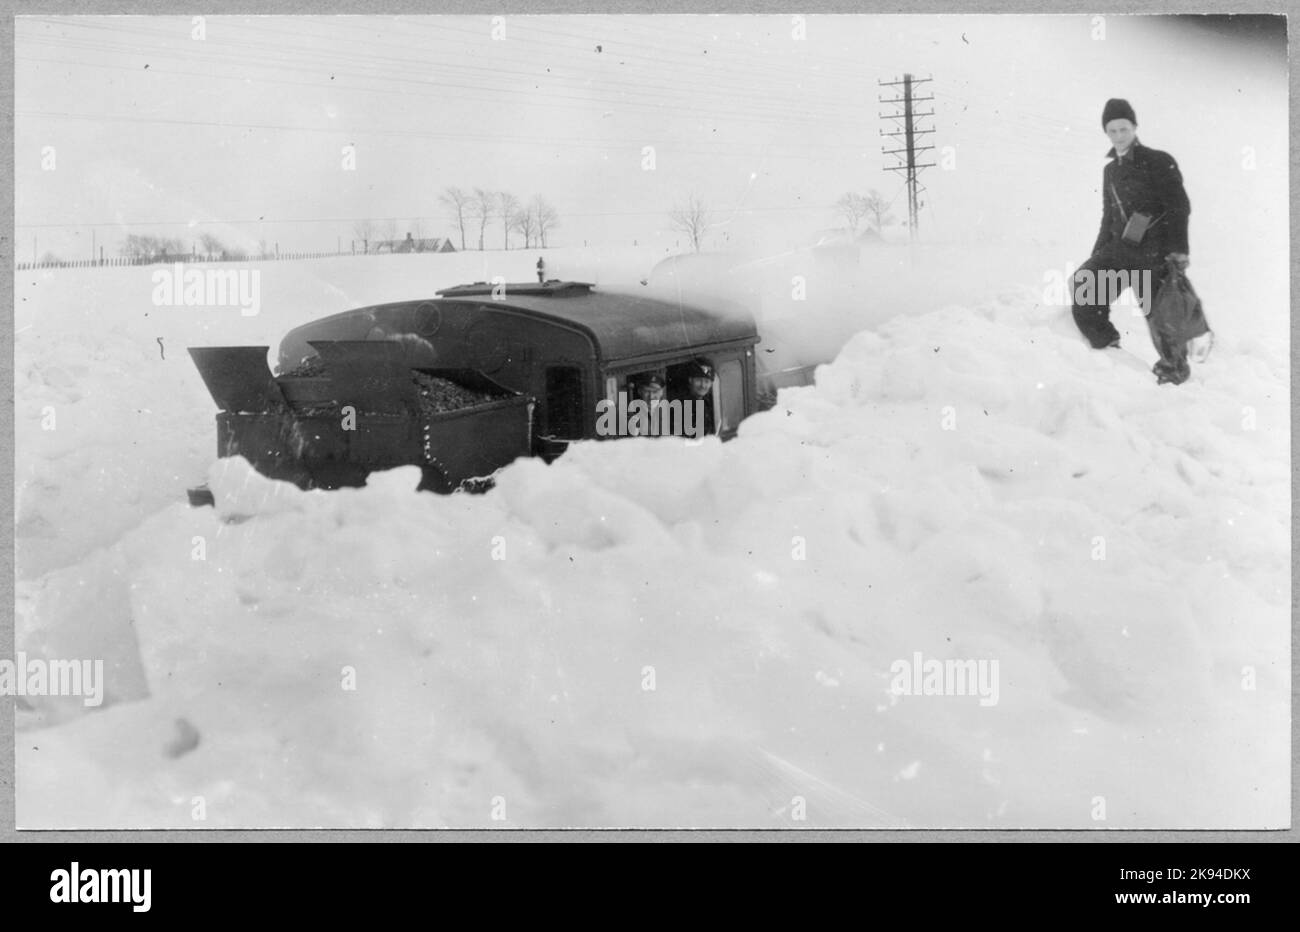 Sur 1 mars 1942, depuis la prise de la photo, les chutes de neige avaient augmenté d'environ 1 mètres de hauteur selon la ration 28 Ystad 18/3-42. Borrby - Hammenhög. Banque D'Images